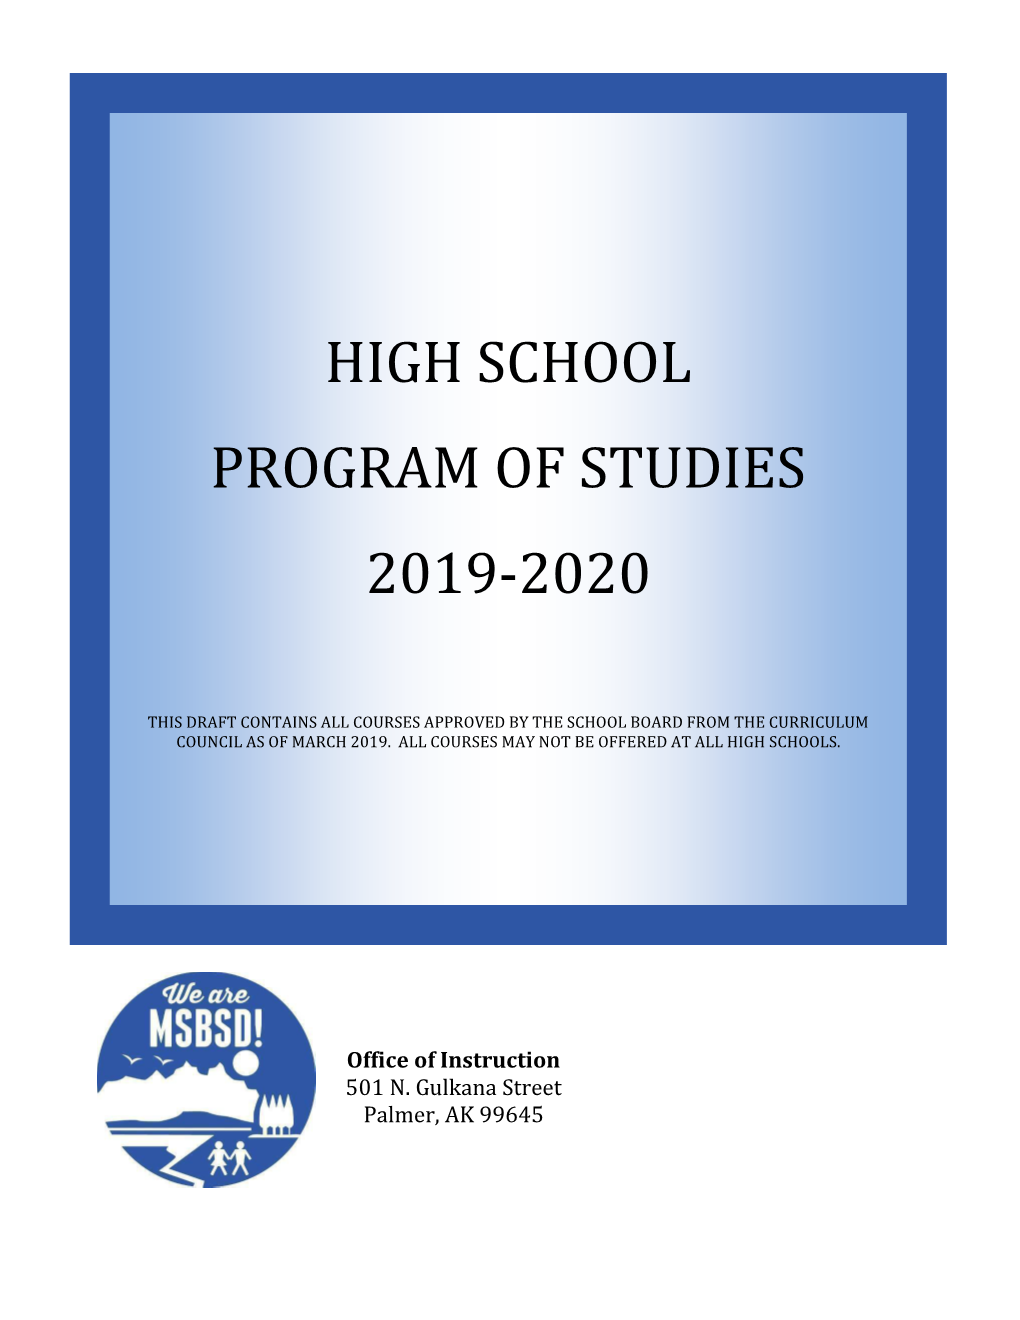 High School Program of Studies 2019-2020